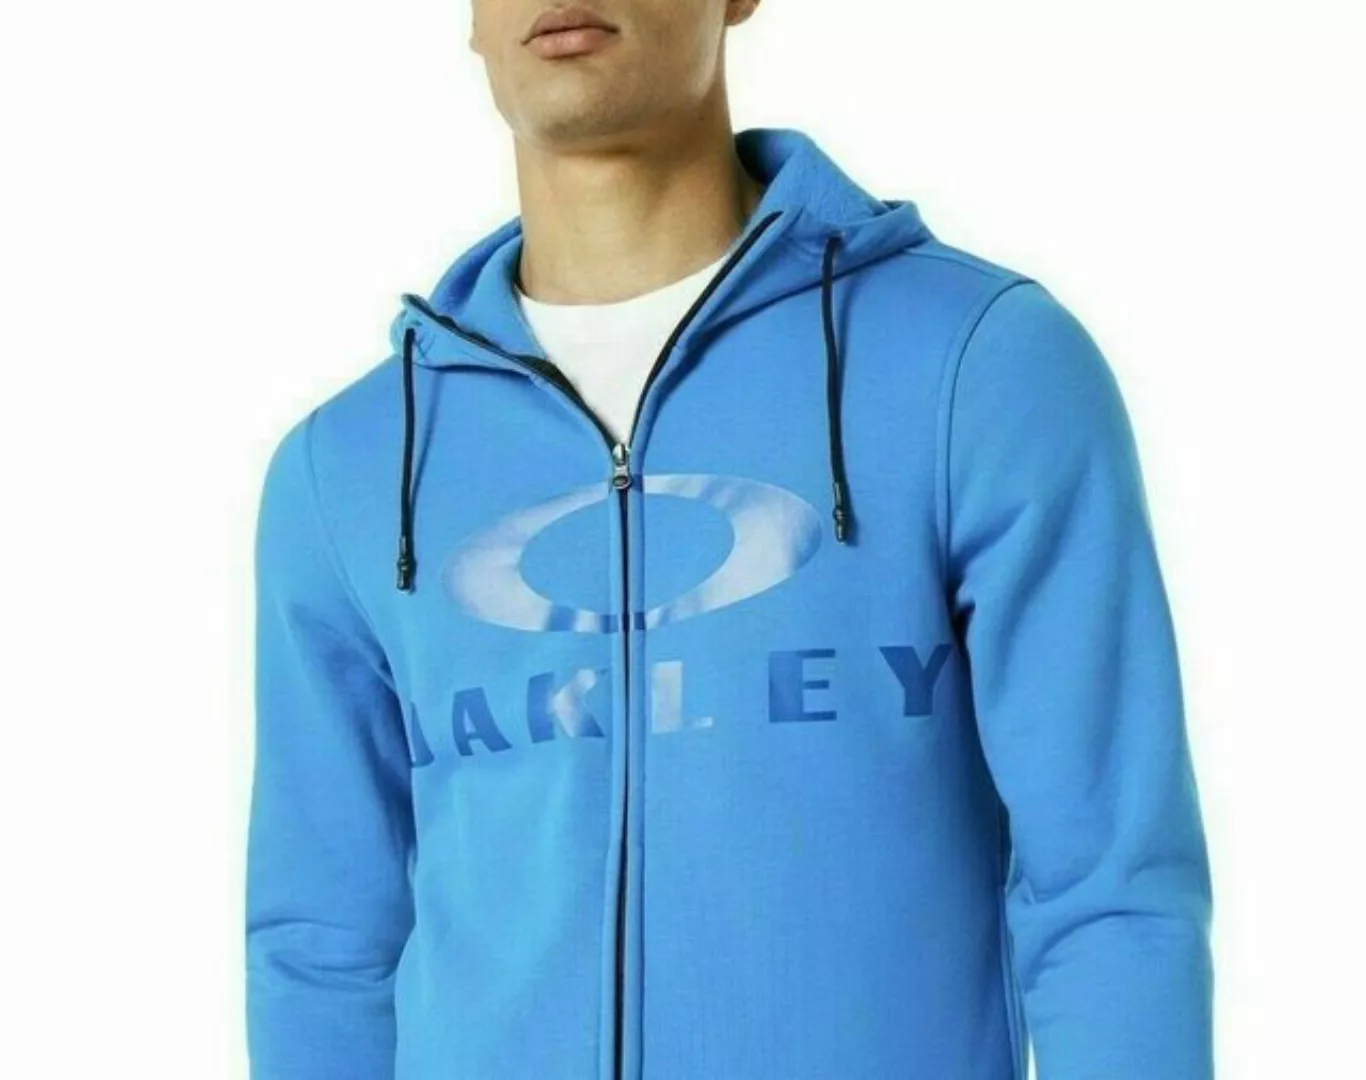 Oakley Sweatshirt OAKLEY SWEATJACKE HOODIE SKI SWEATSHIRT JACKE KAPUZEN-PUL günstig online kaufen